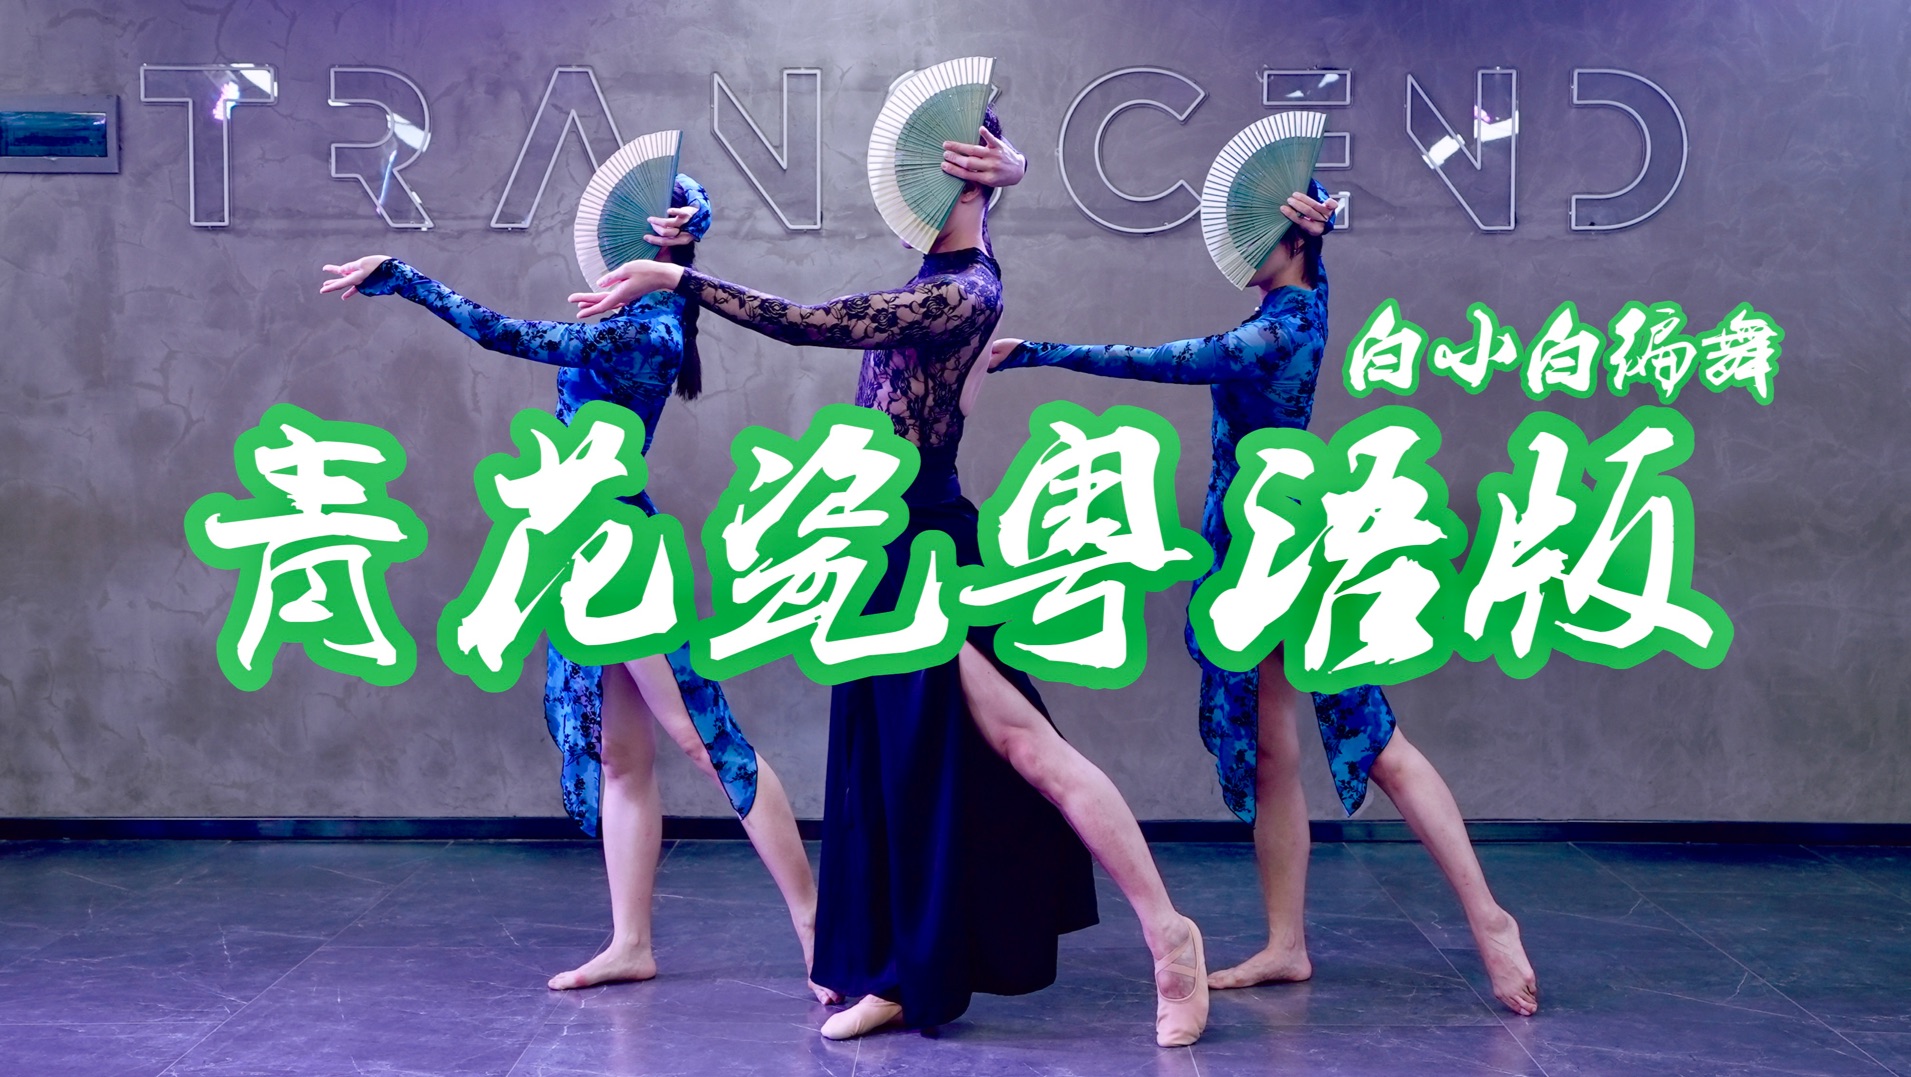 绝美扇子舞《青花瓷》粤语版❀中国风爵士编舞 太好看啦